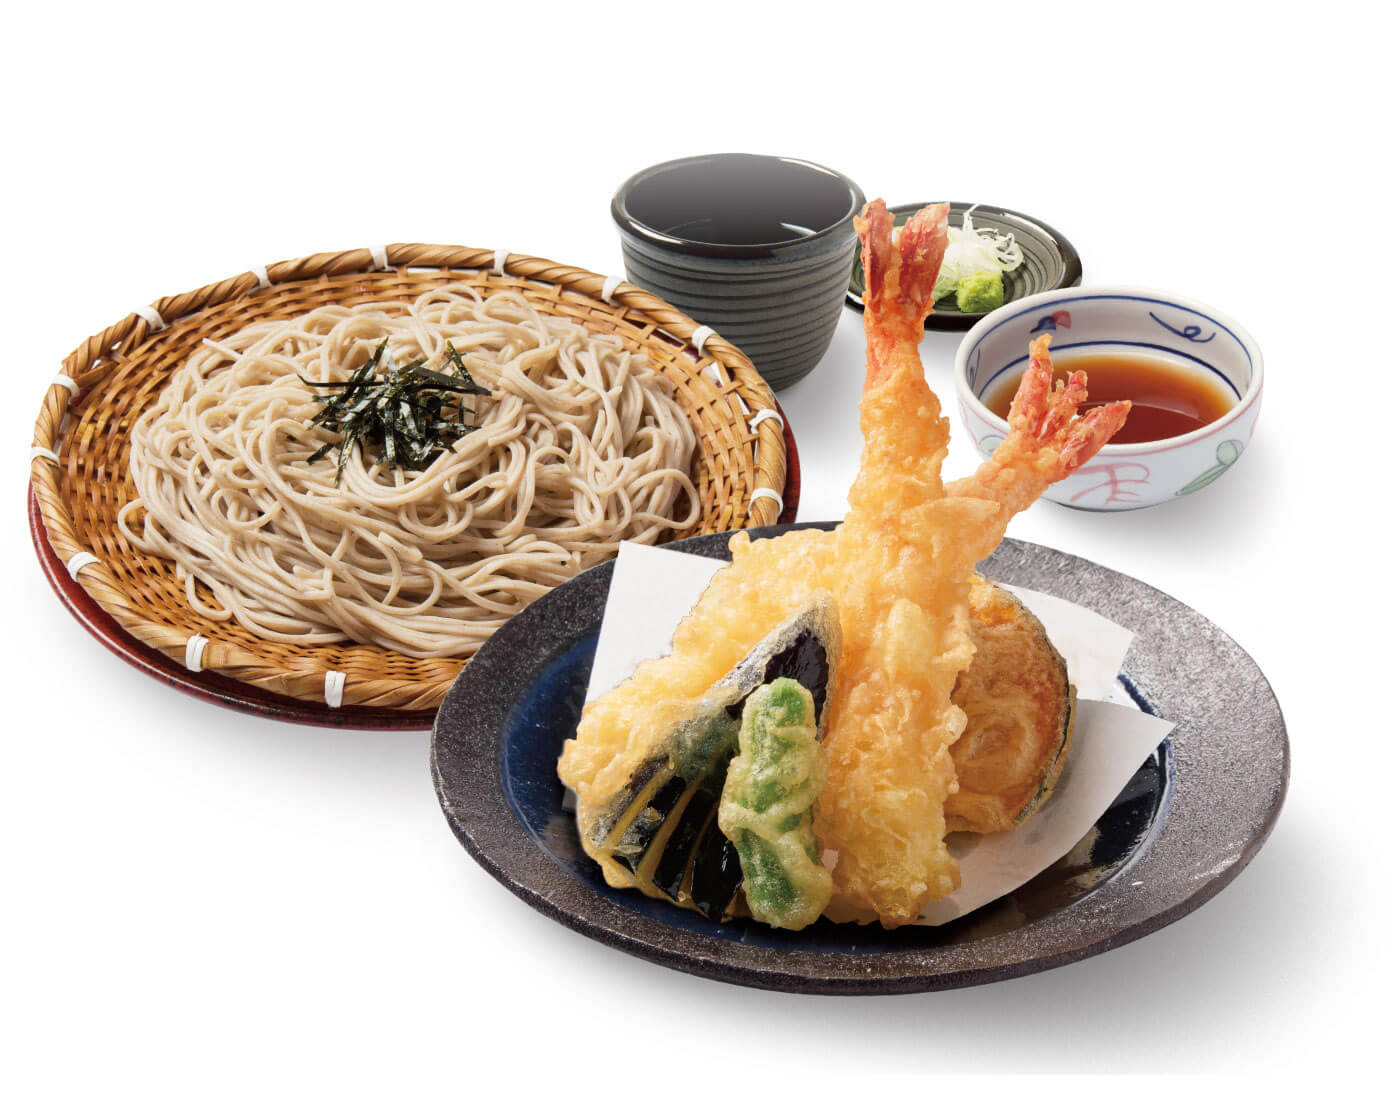 ざる蕎麦と、エビと野菜の天ぷらがセットになった「大海老天ざる蕎麦」1,180円